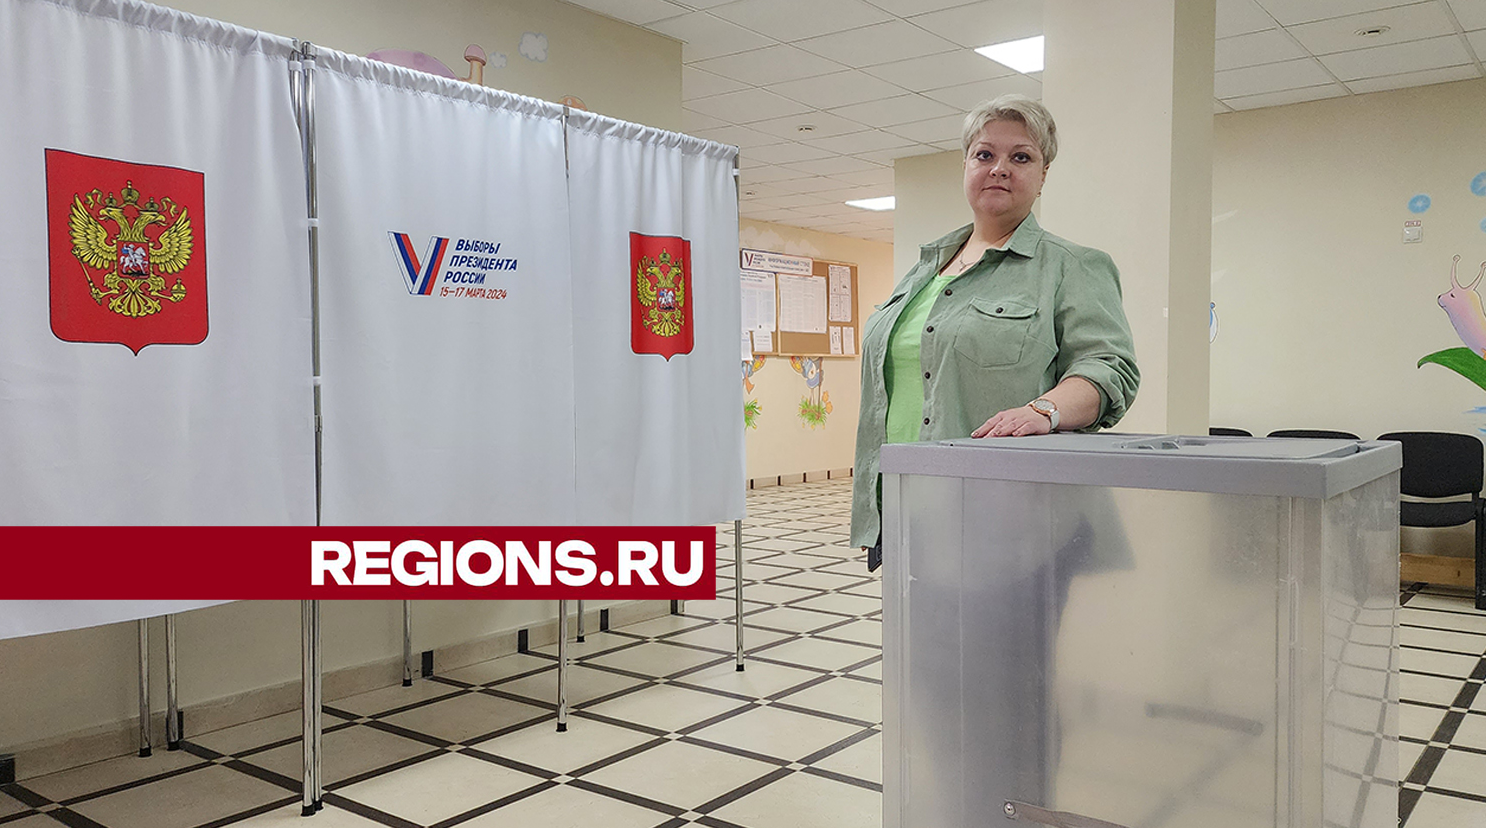 Лупы для слабовидящих подготовили на избирательном участке в Новом Пушкино